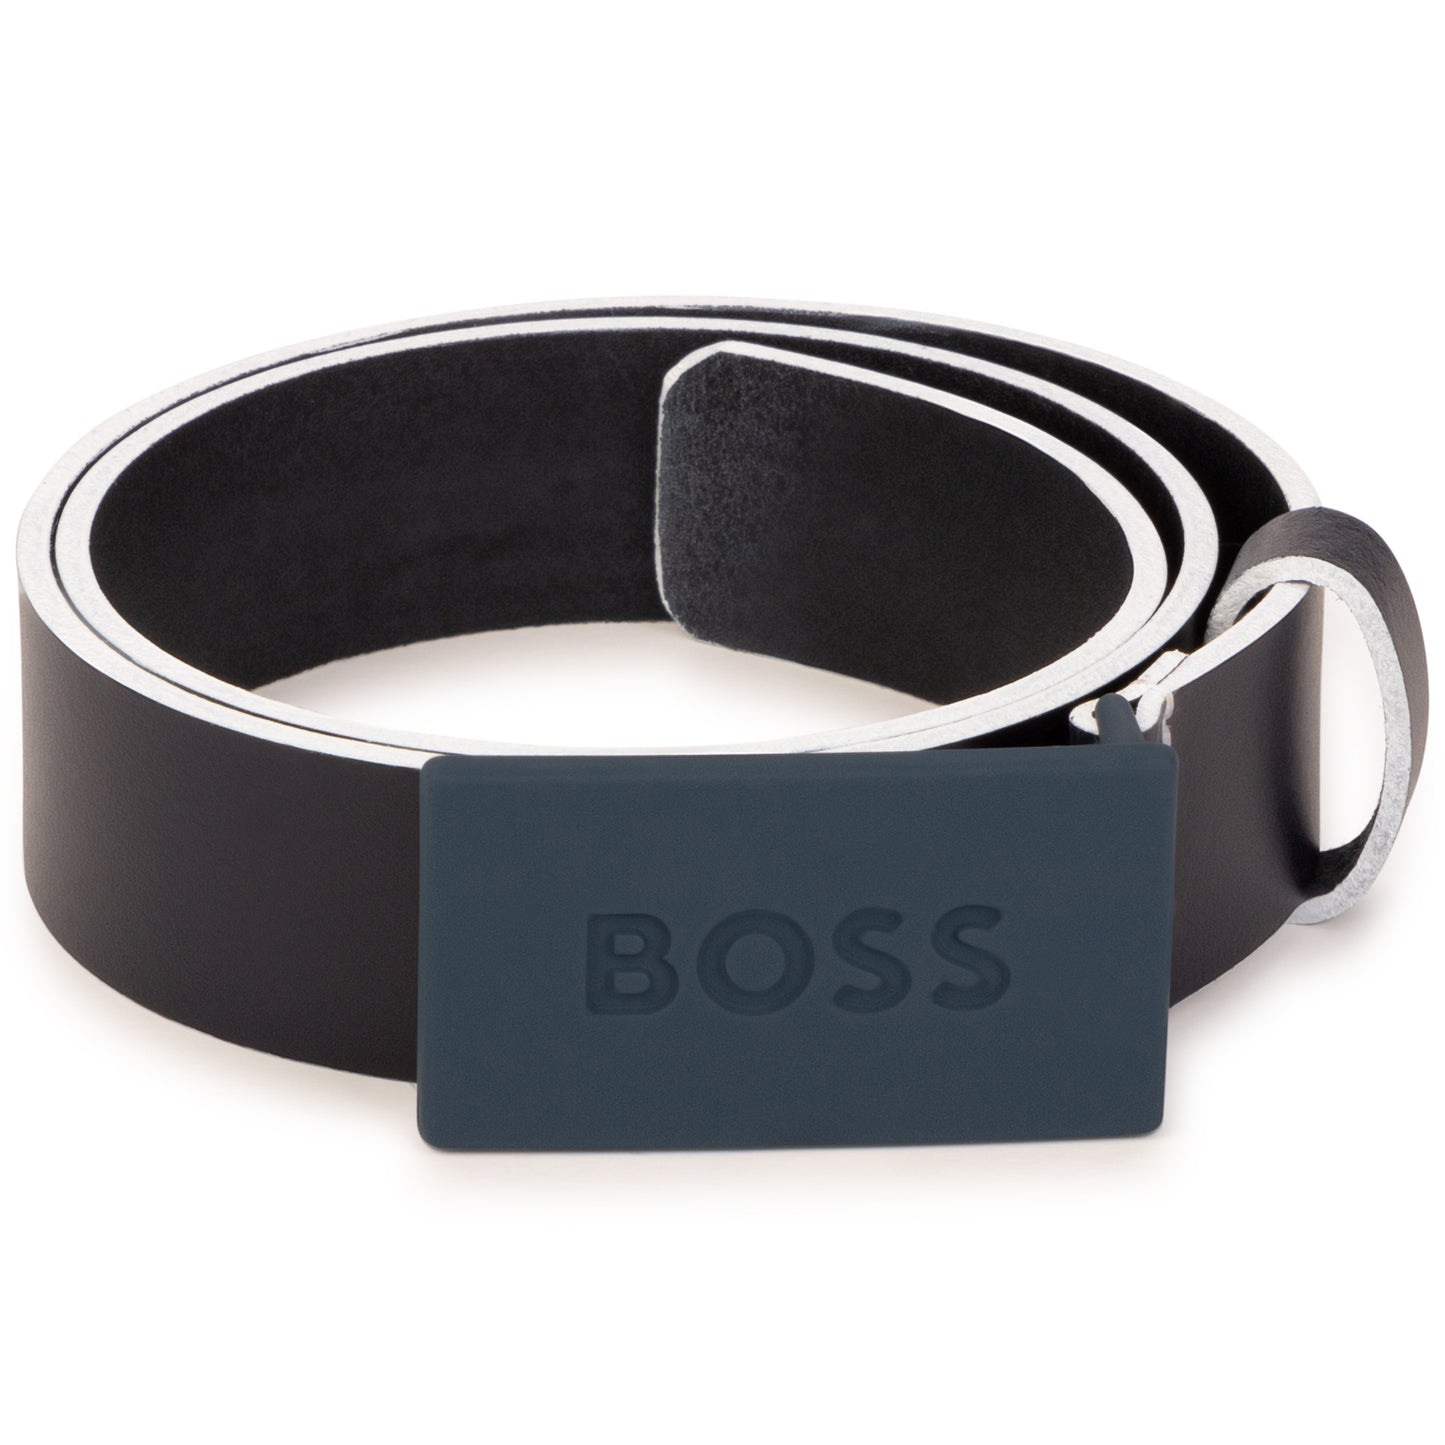 Hugo Boss Boys Leather Belt w/Metal Buckle _Navy J20355-849